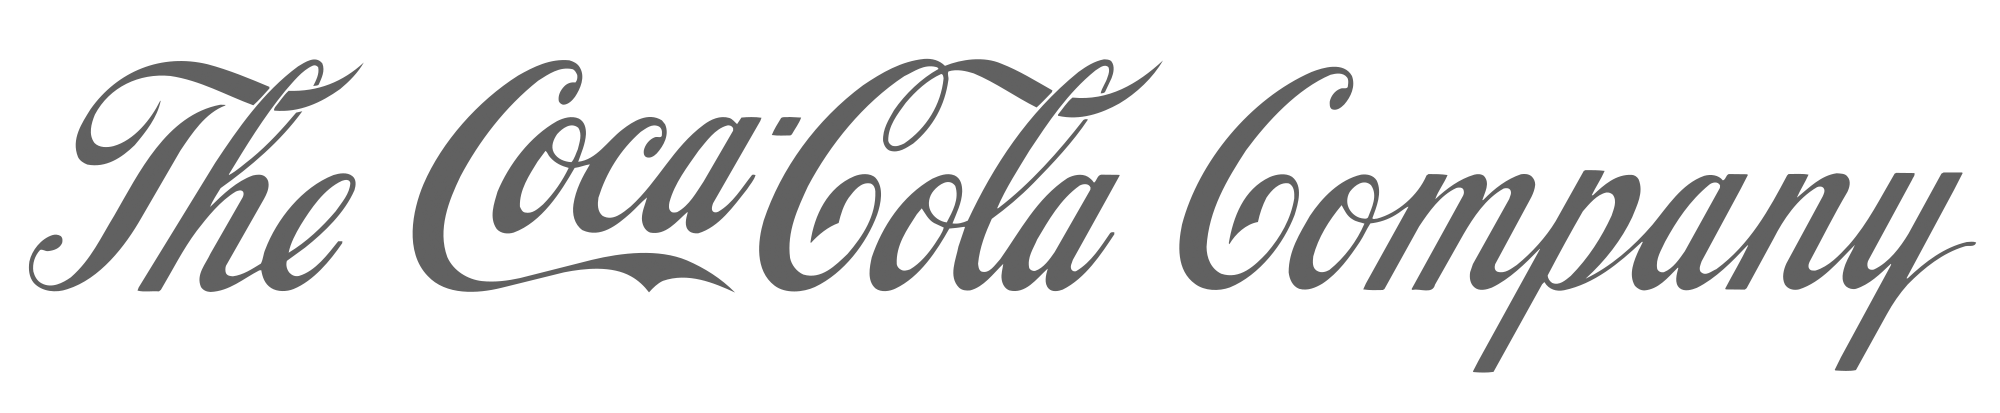 The_Coca-Cola_Company_logo.svg copy.png